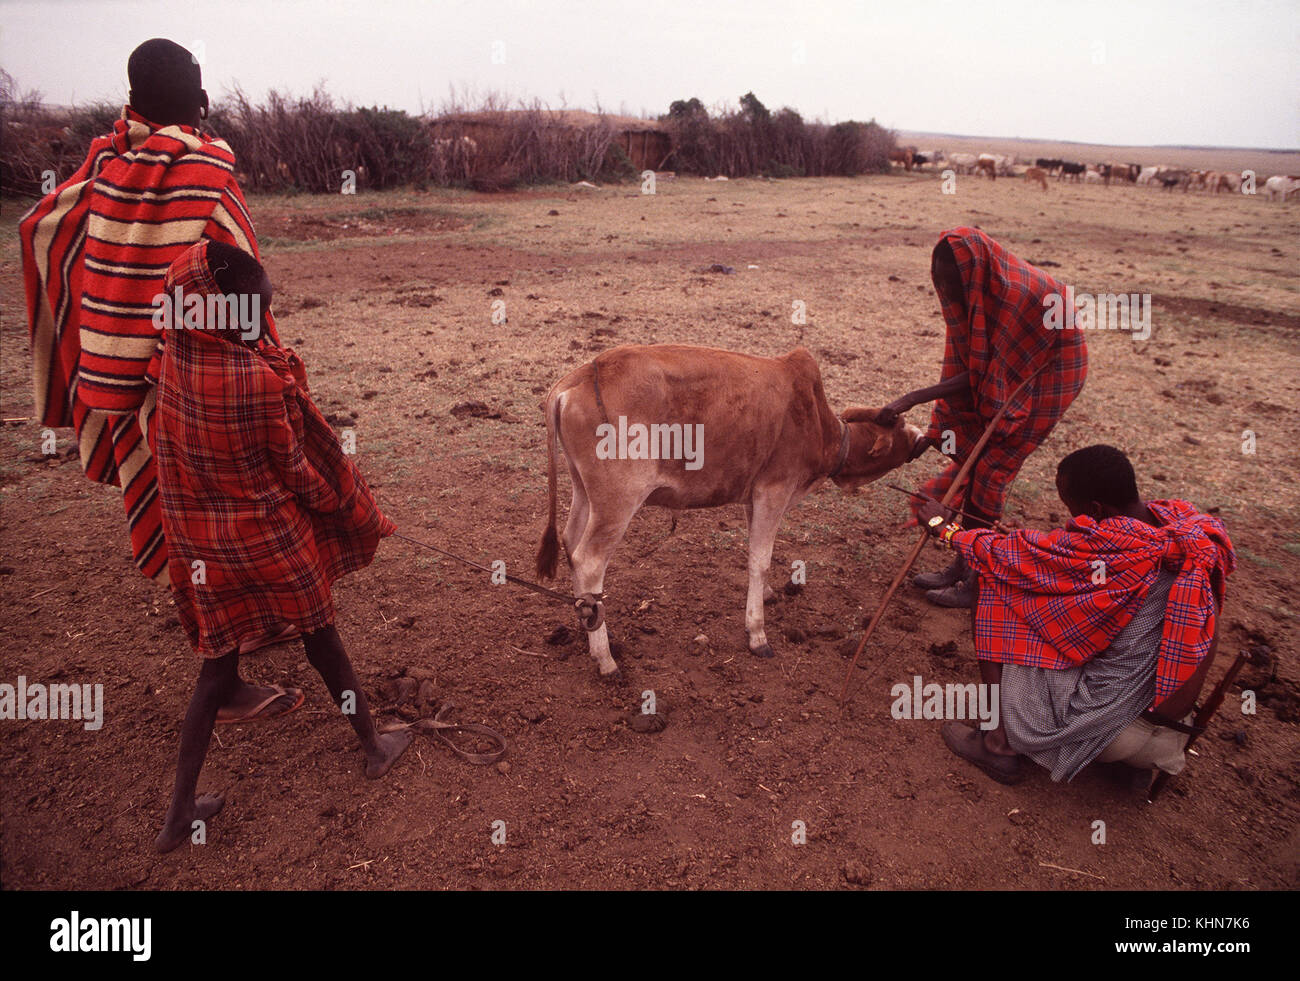 Masais tôt le matin de prendre le sang de la veine jugulaire de vaches près de Talek village, Masai Mara, Kenya Banque D'Images